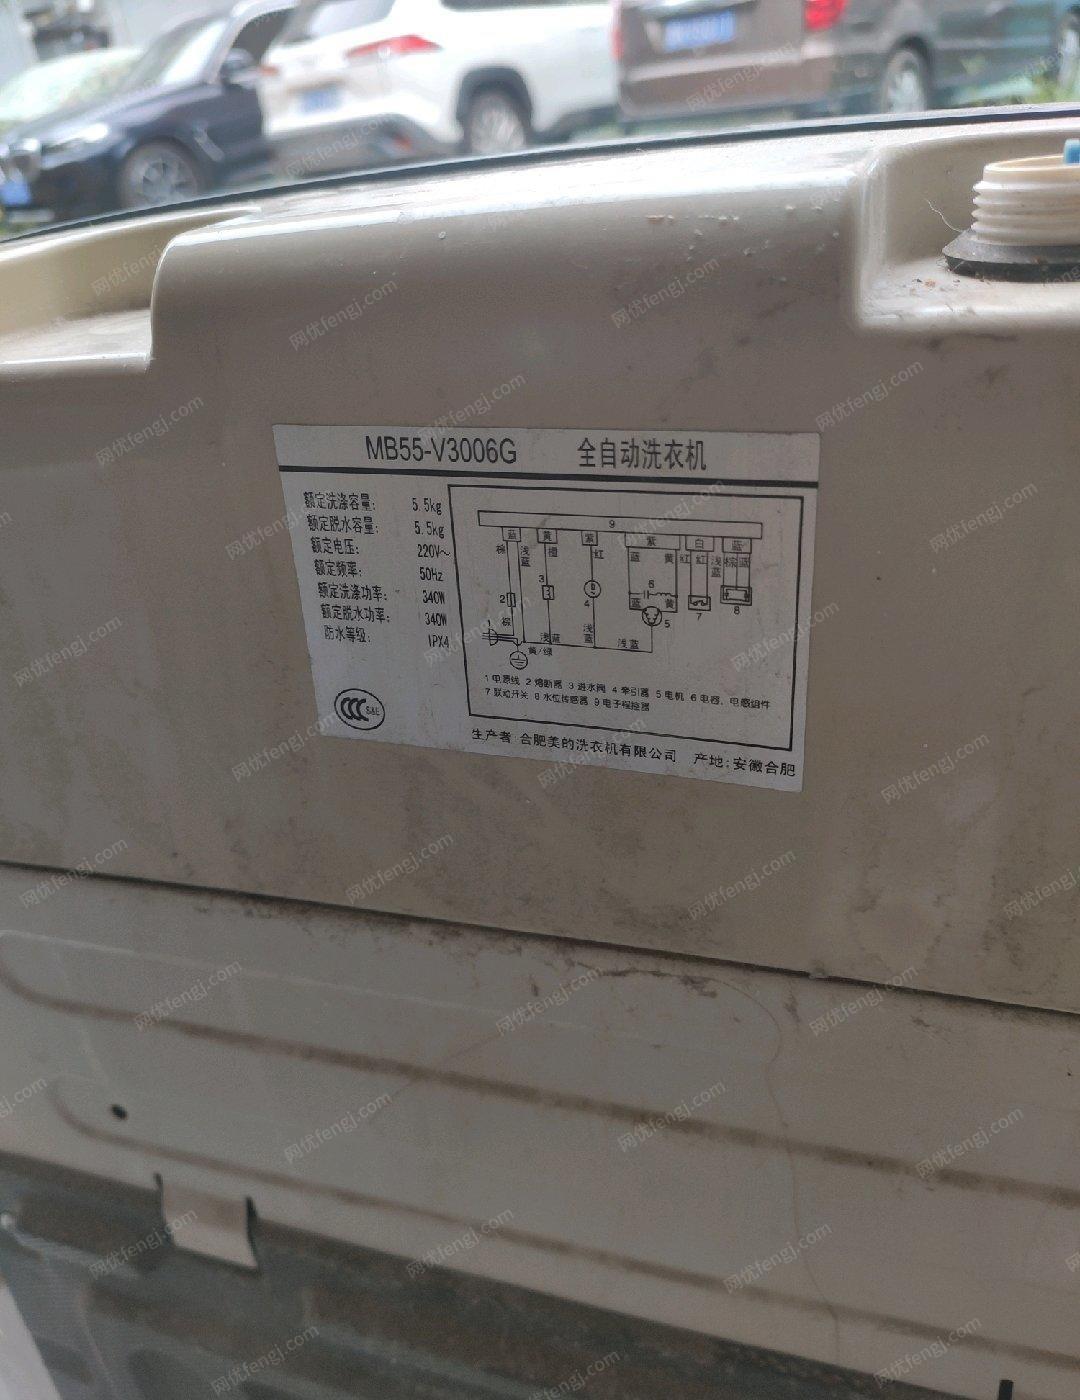 山东德州5.5公斤全自动洗衣机出售。用不到了有需要的电话联系